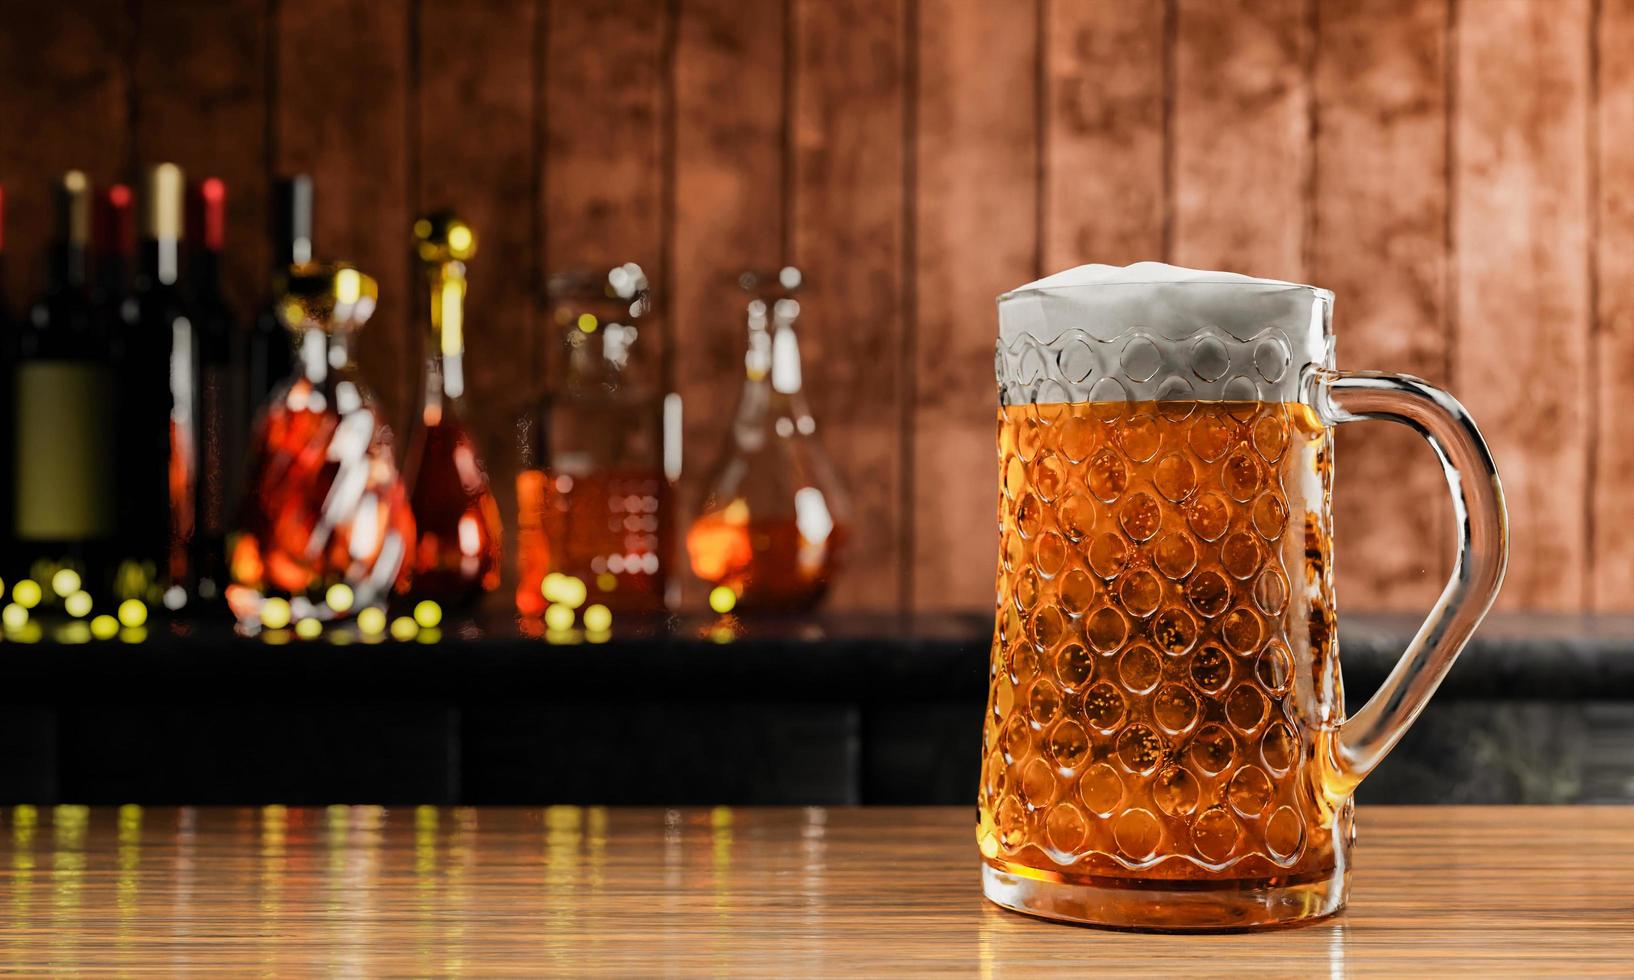 chope ou cerveja artesanal em copo alto e transparente. com vapor frio, espuma de cerveja branca colocada sobre um piso de madeira, atrás do fundo é uma garrafa de vinho, uísque, conhaque no restaurante ou bar. renderização em 3D foto